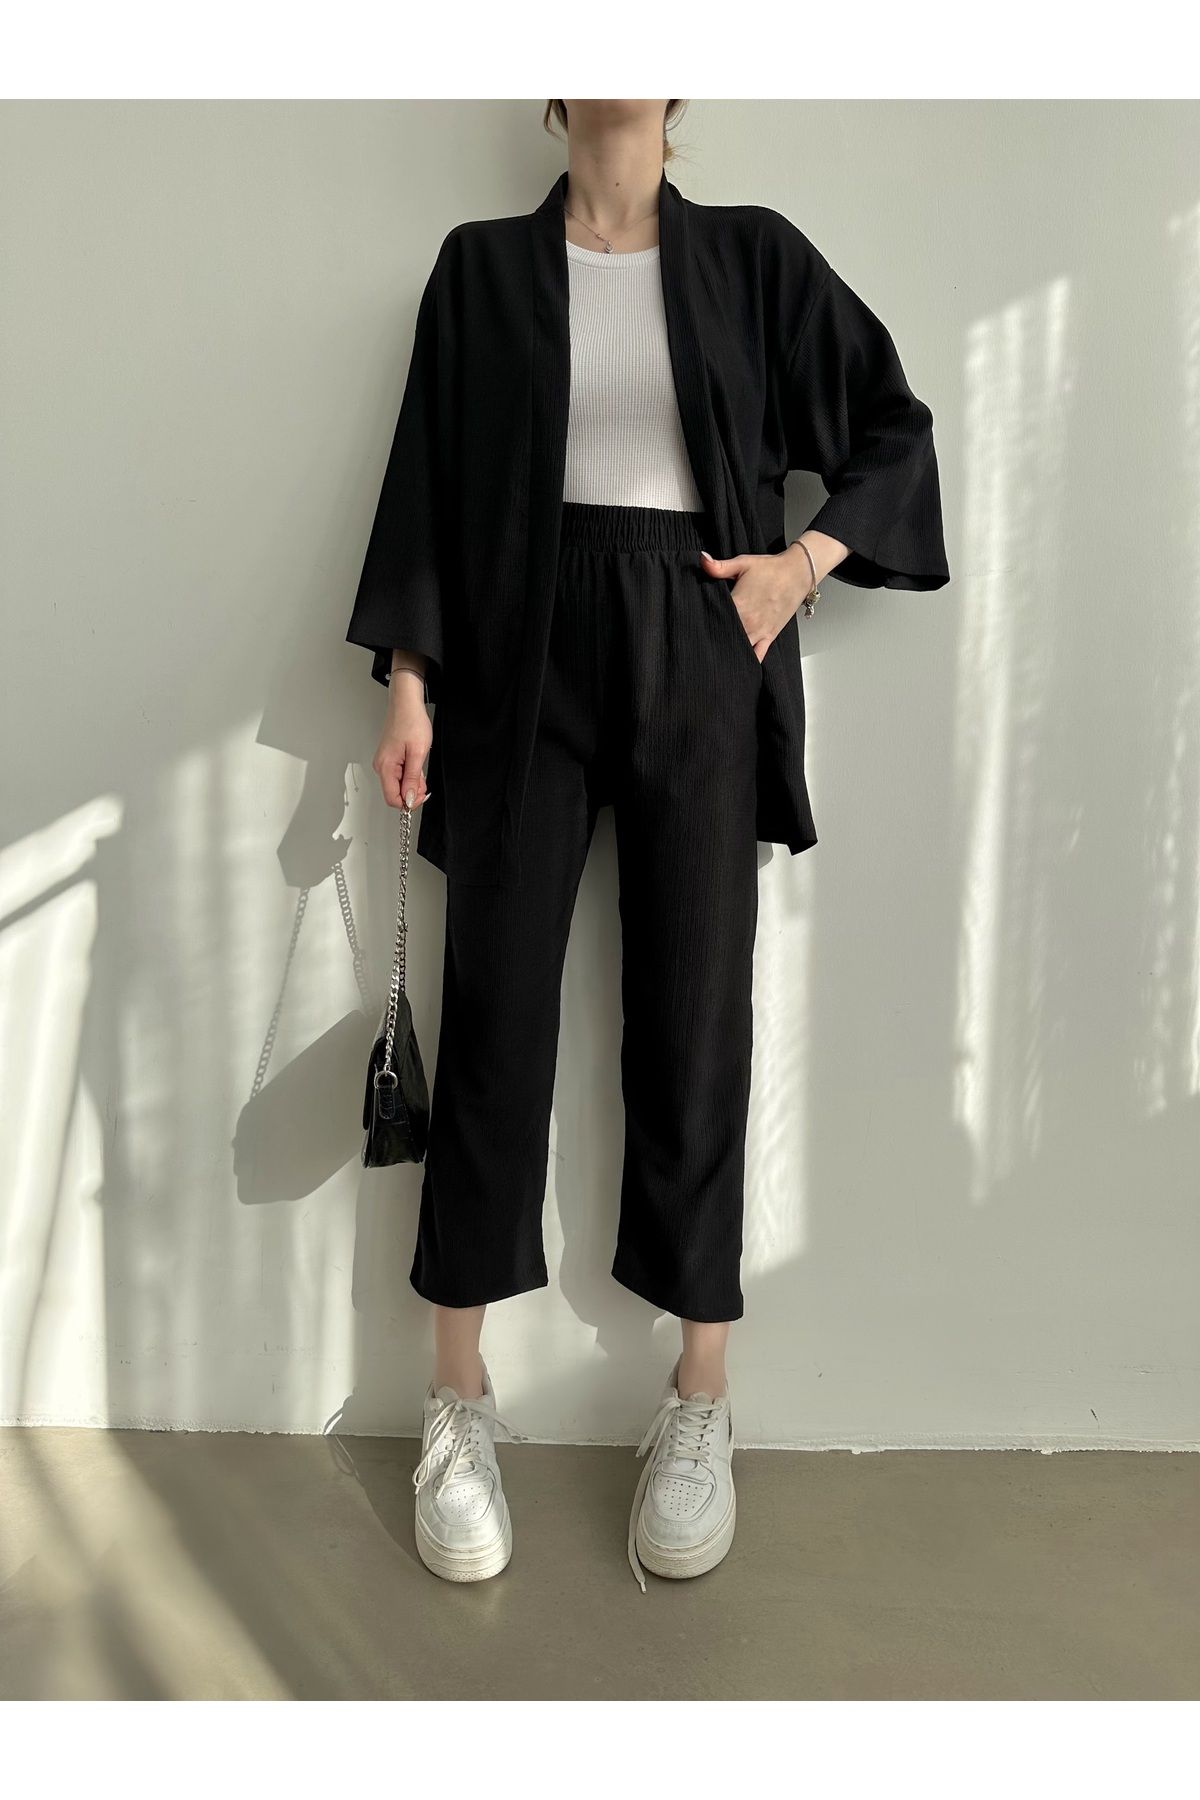 BEJNA Kadın Siyah Kimono Pantolon Örme Takımı